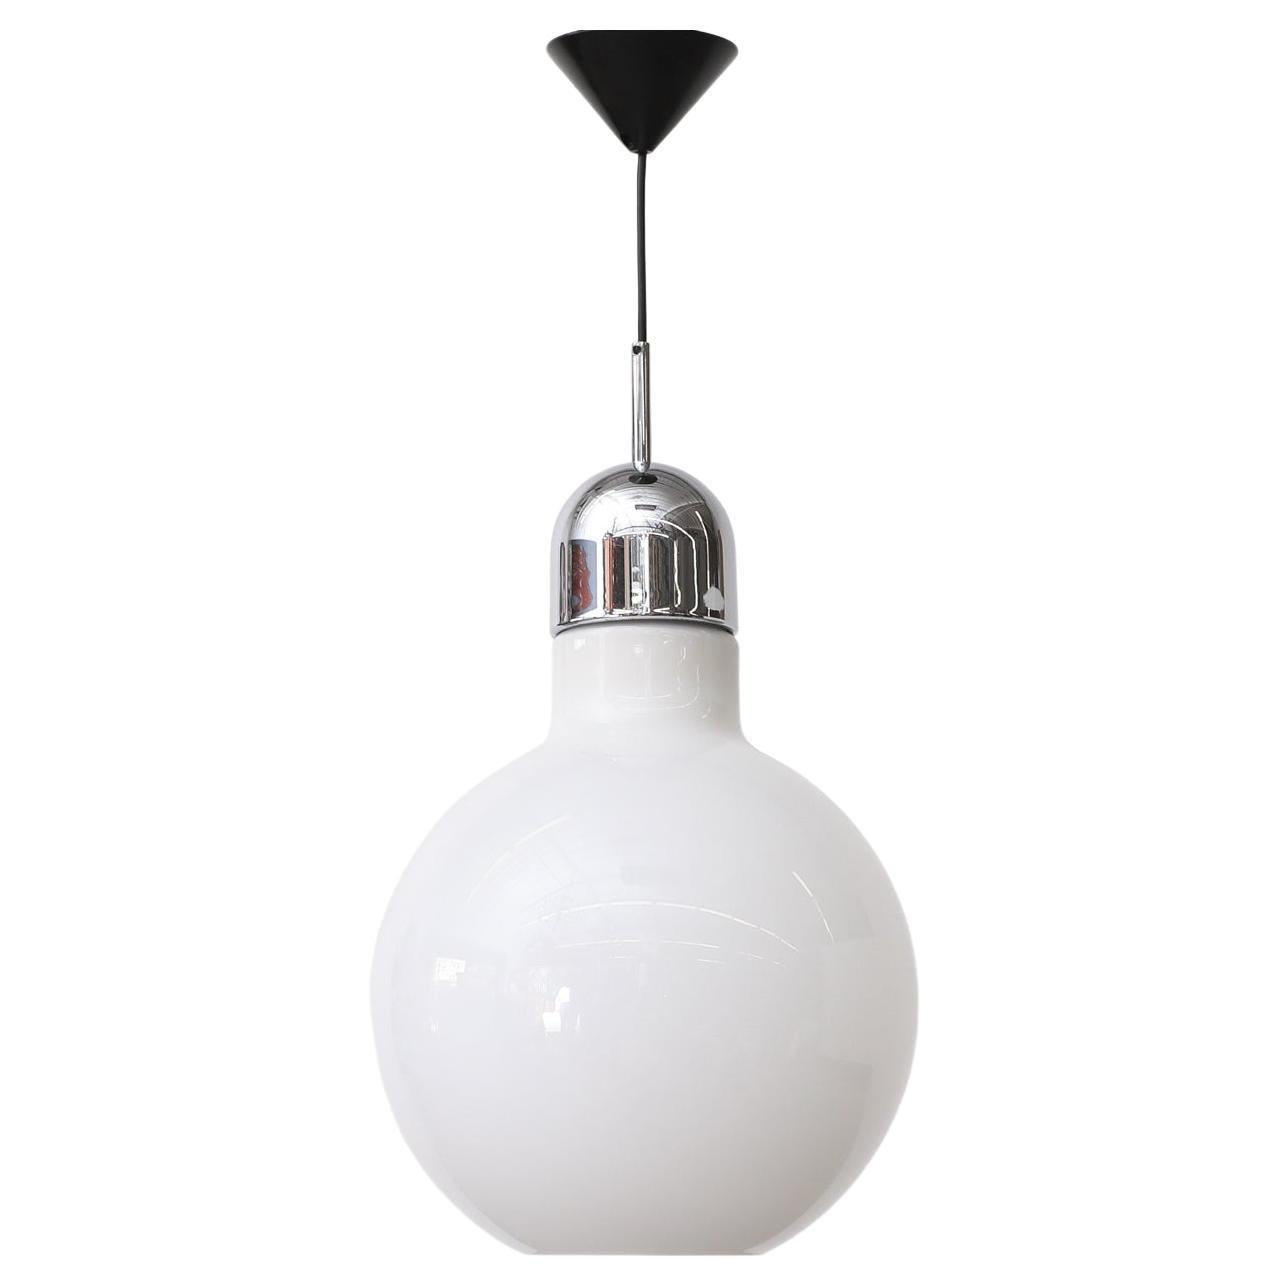 Lampe suspendue globe en verre opalin avec fond ouvert, capuchon chromé et verrière noire